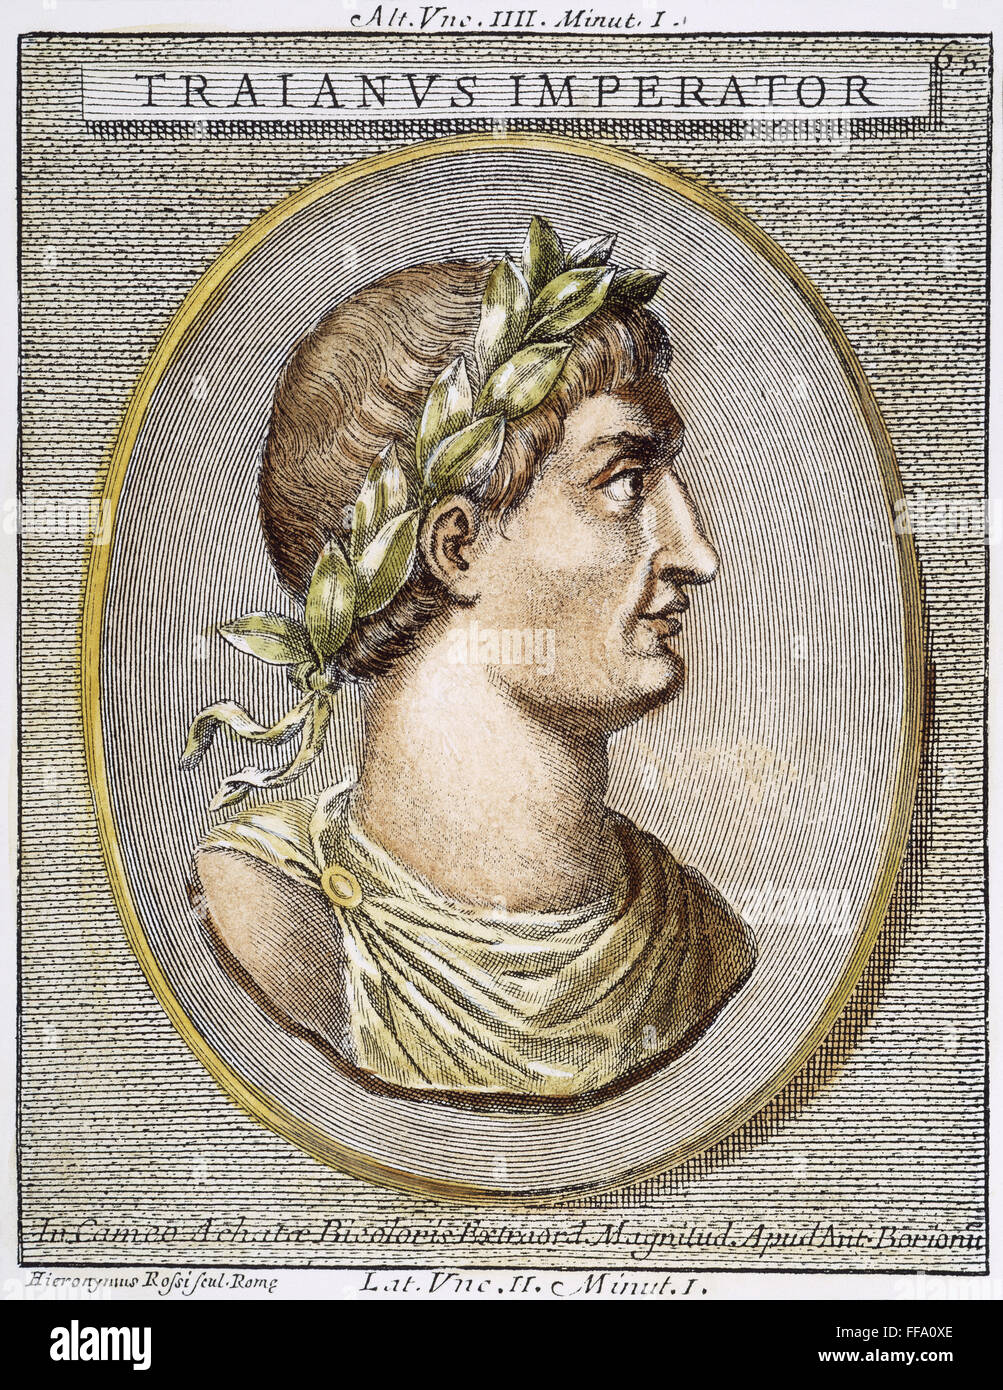 EMPEROR TRAJAN (c53-117). /nRoman emperor (98-117). Copper engraving, Italian, 18th century. Stock Photo